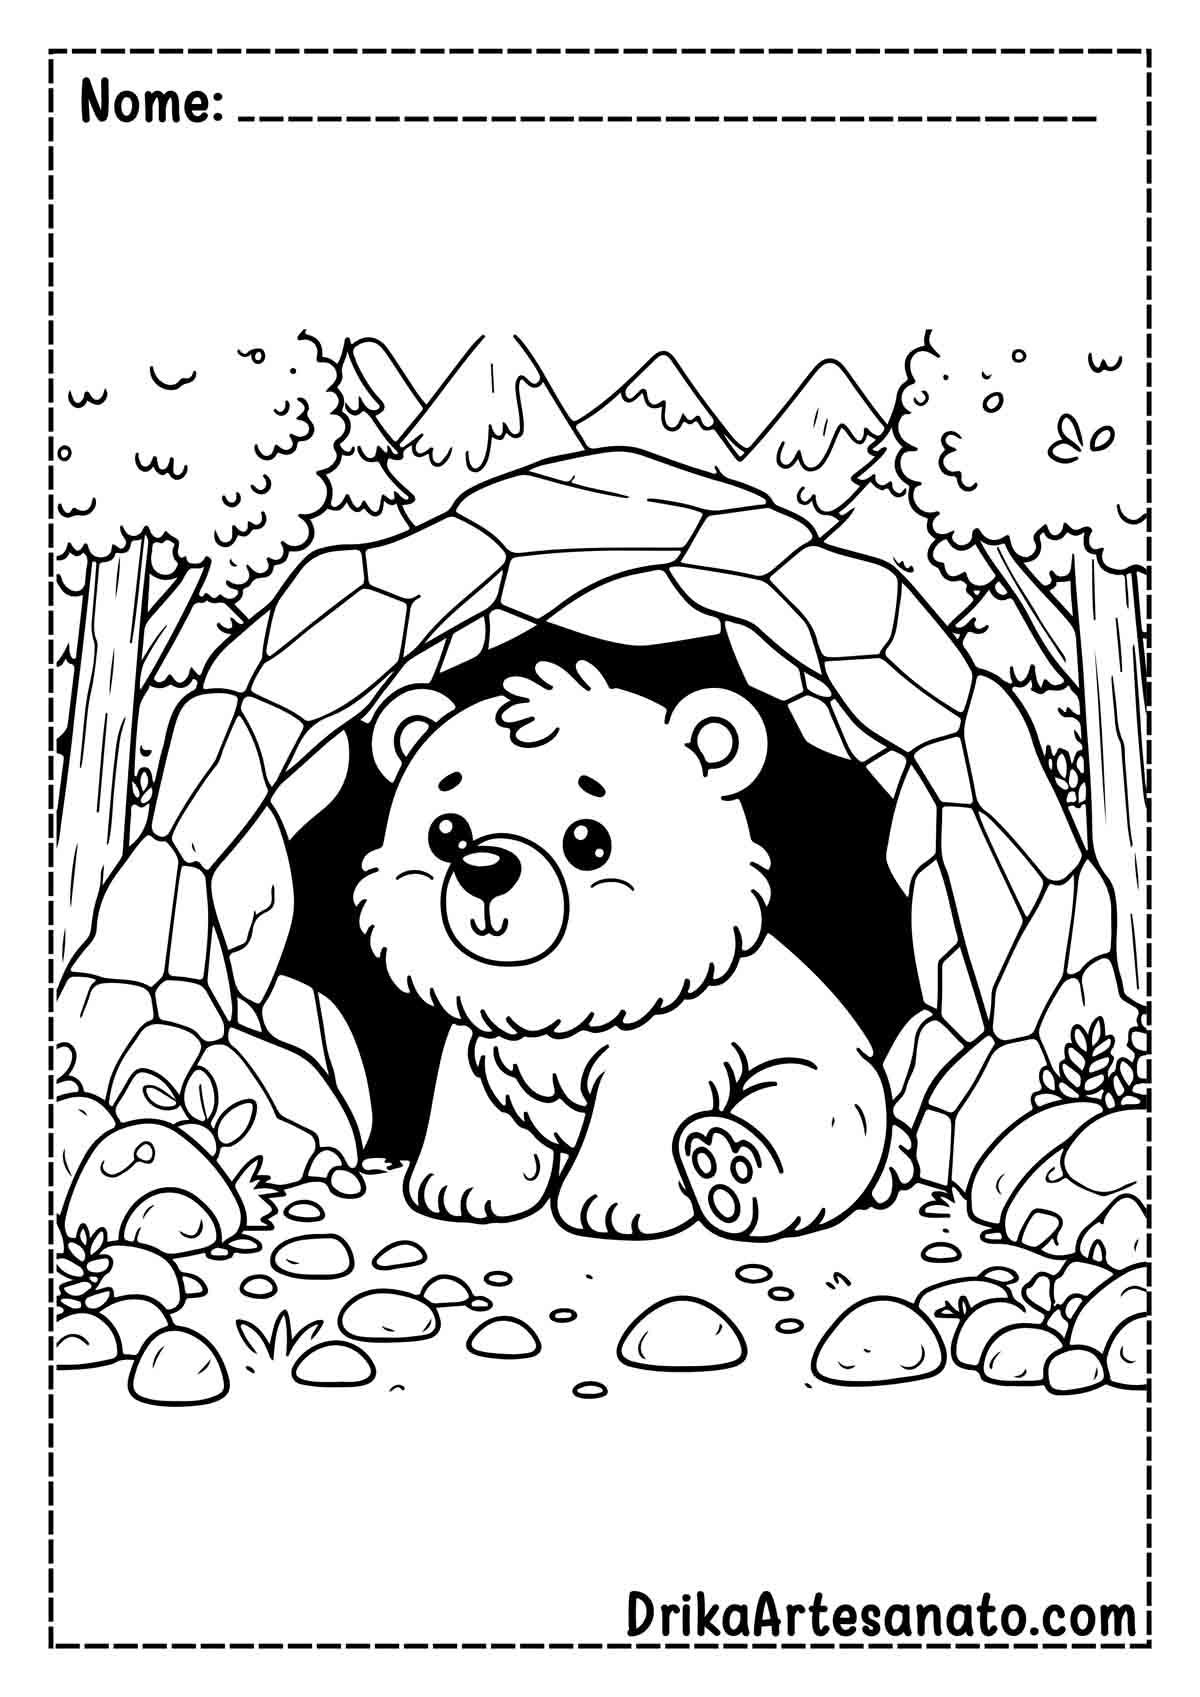 Desenho de Urso Fofo para Pintar